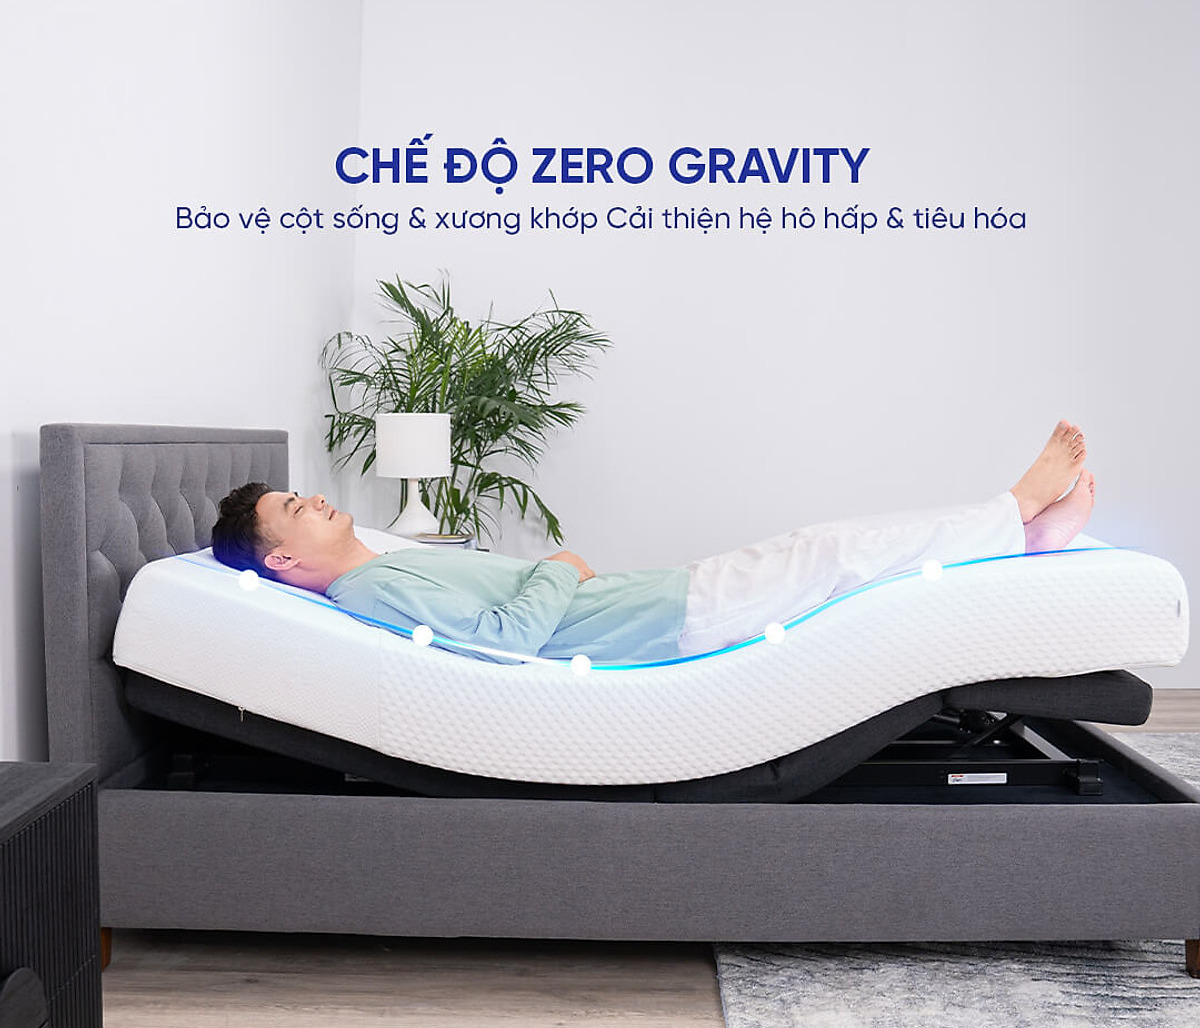 Chế độ Zero Gravity giúp bảo vệ cột sống và xương khớp trong khi ngủ